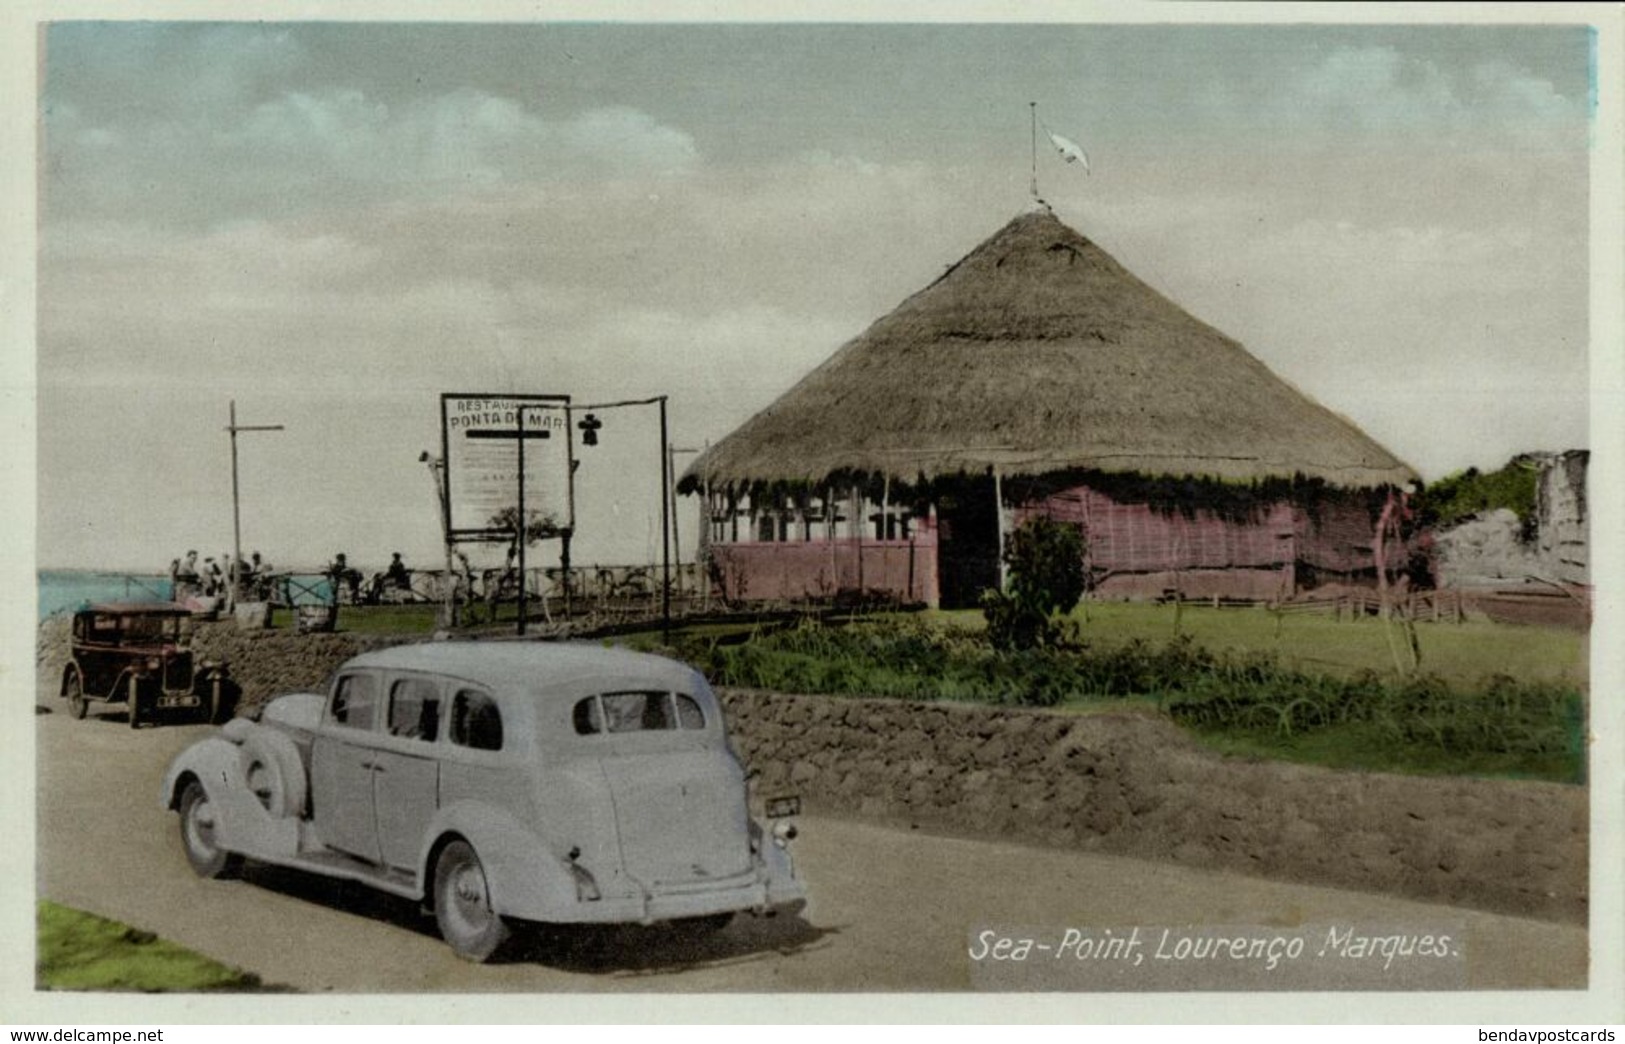 Mozambique, LOURENÇO MARQUES, Sea-Point, Car (1930s) Postcard - Mozambique